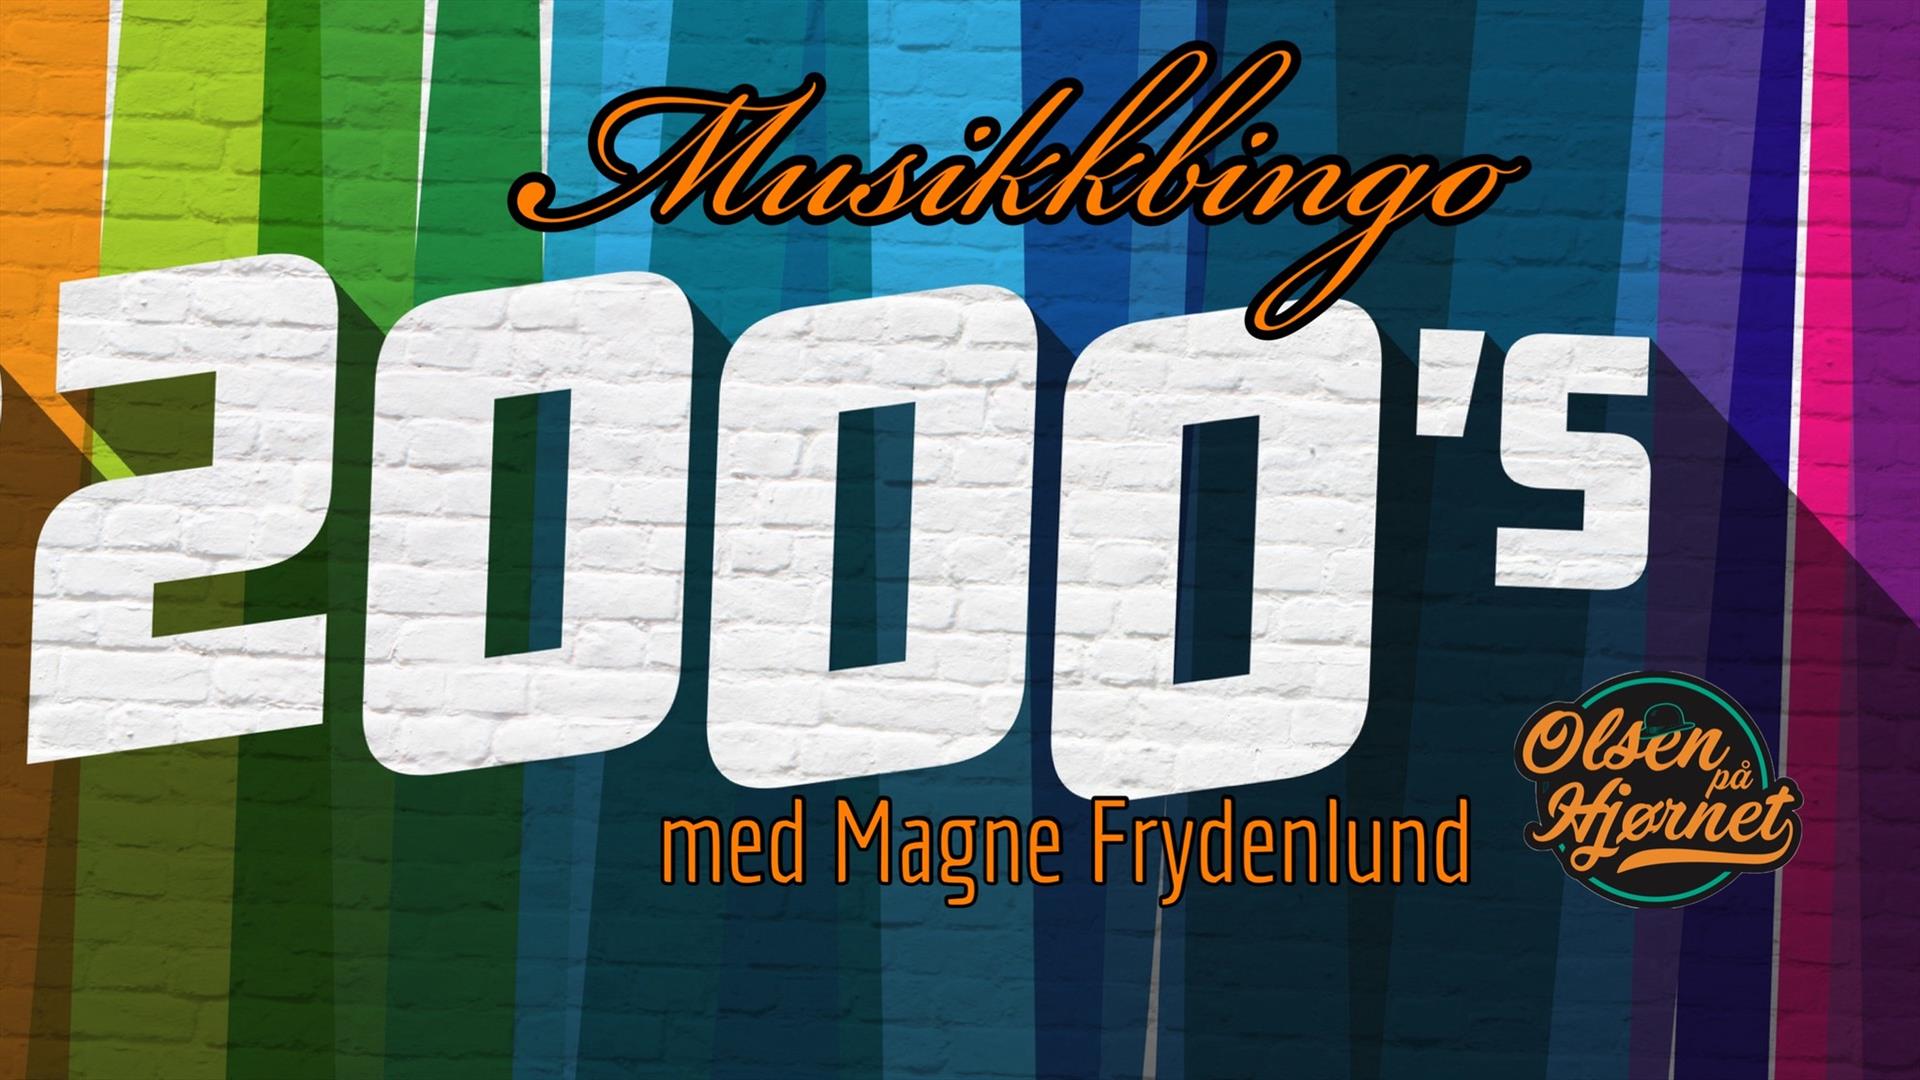 Musikkbingo med Magne Frydenlund